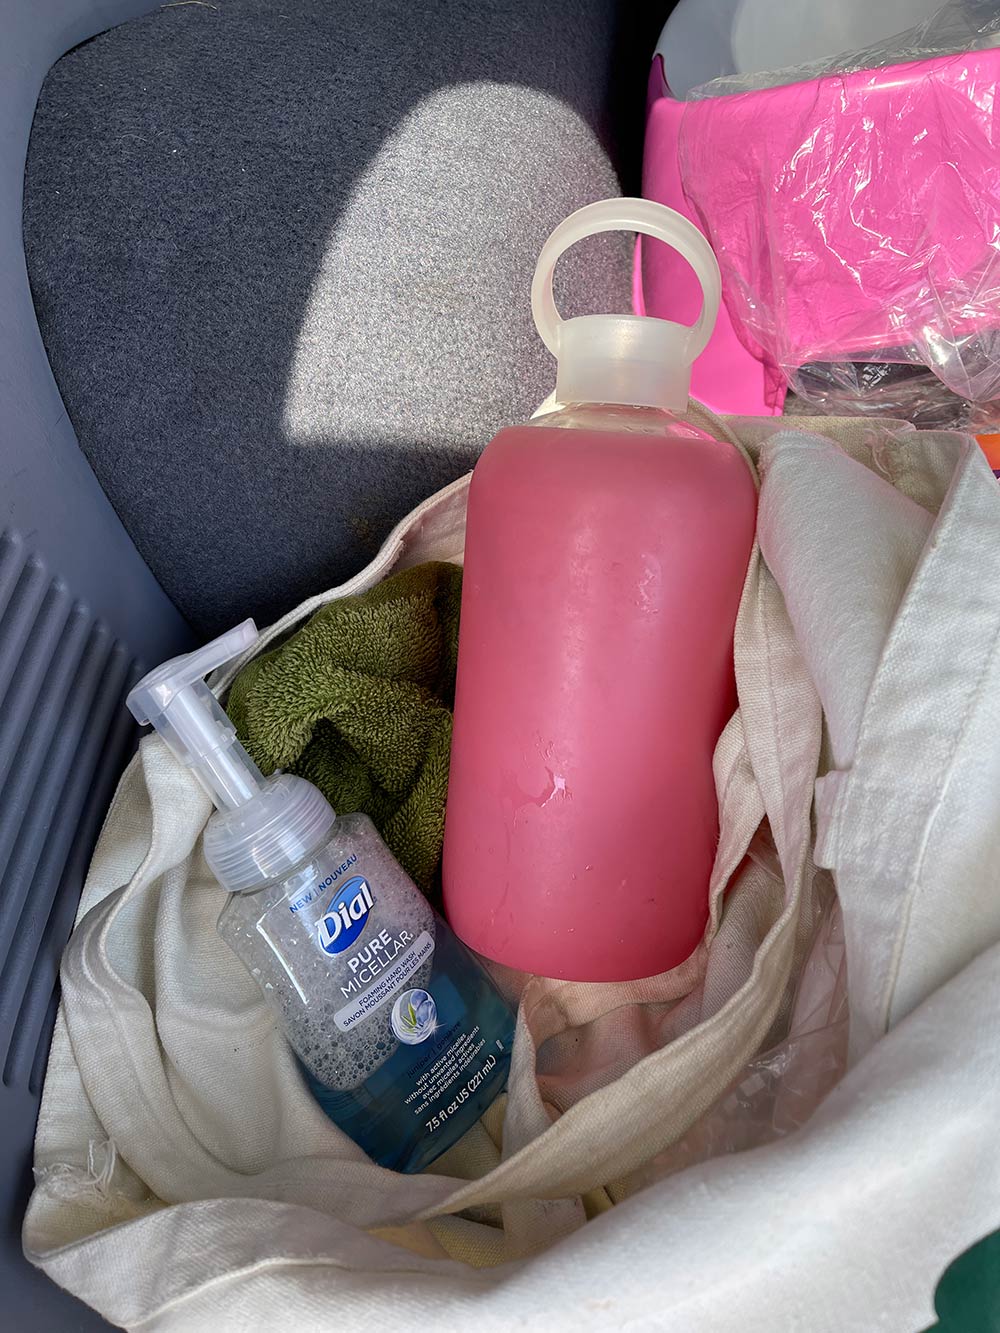  water bottle soap trunk car